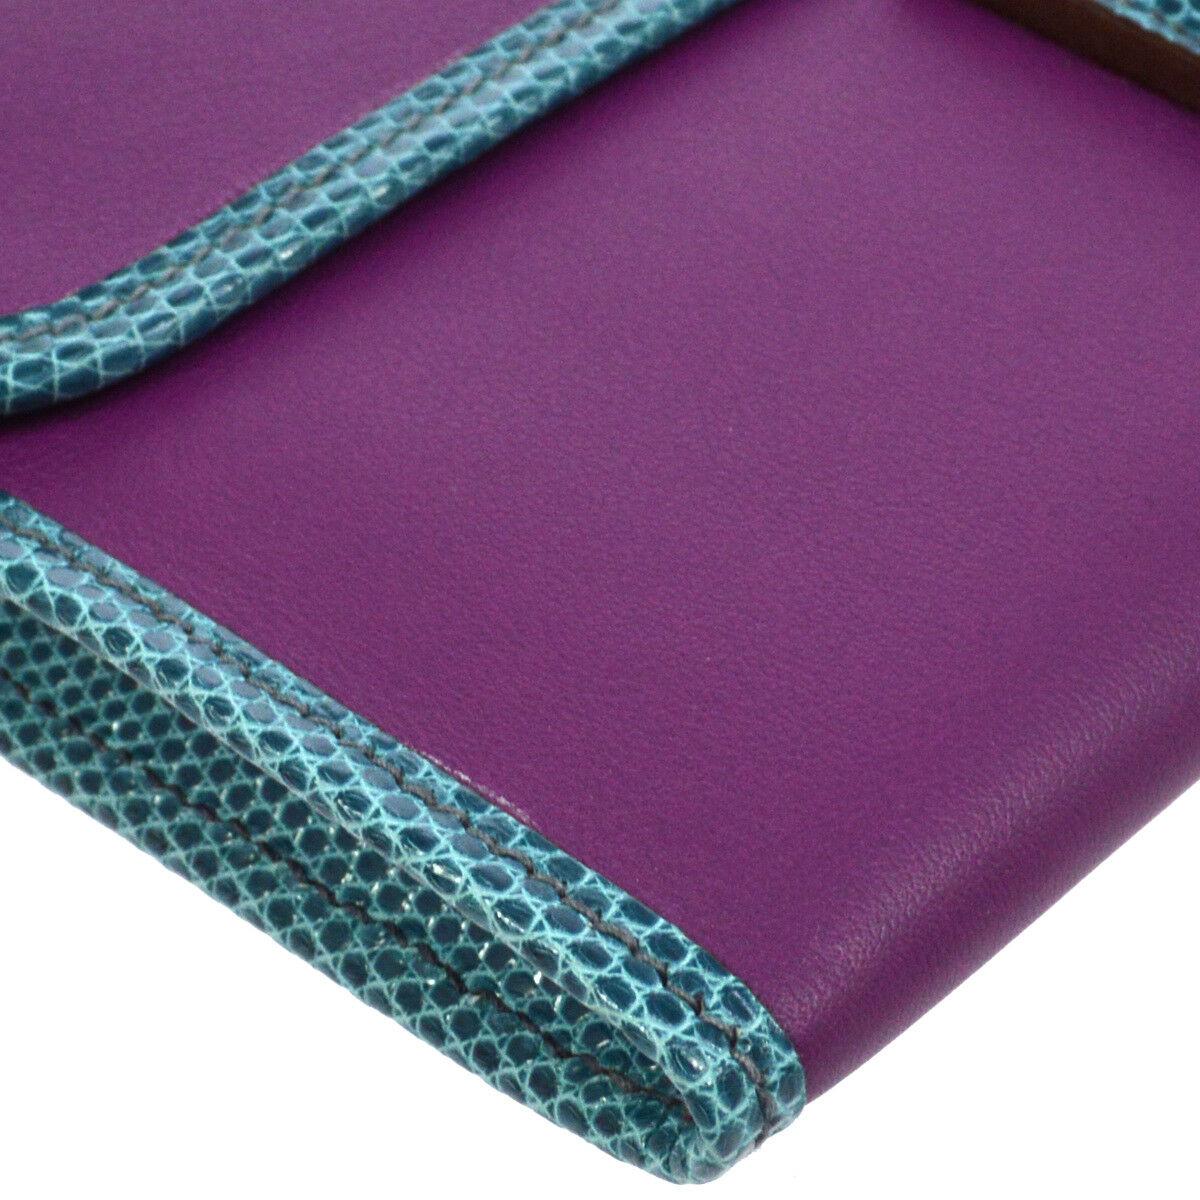 Women's Hermes Blue Purple Lizard Exotic Leather 'H' Logo Wallet Clutch Bag in Box